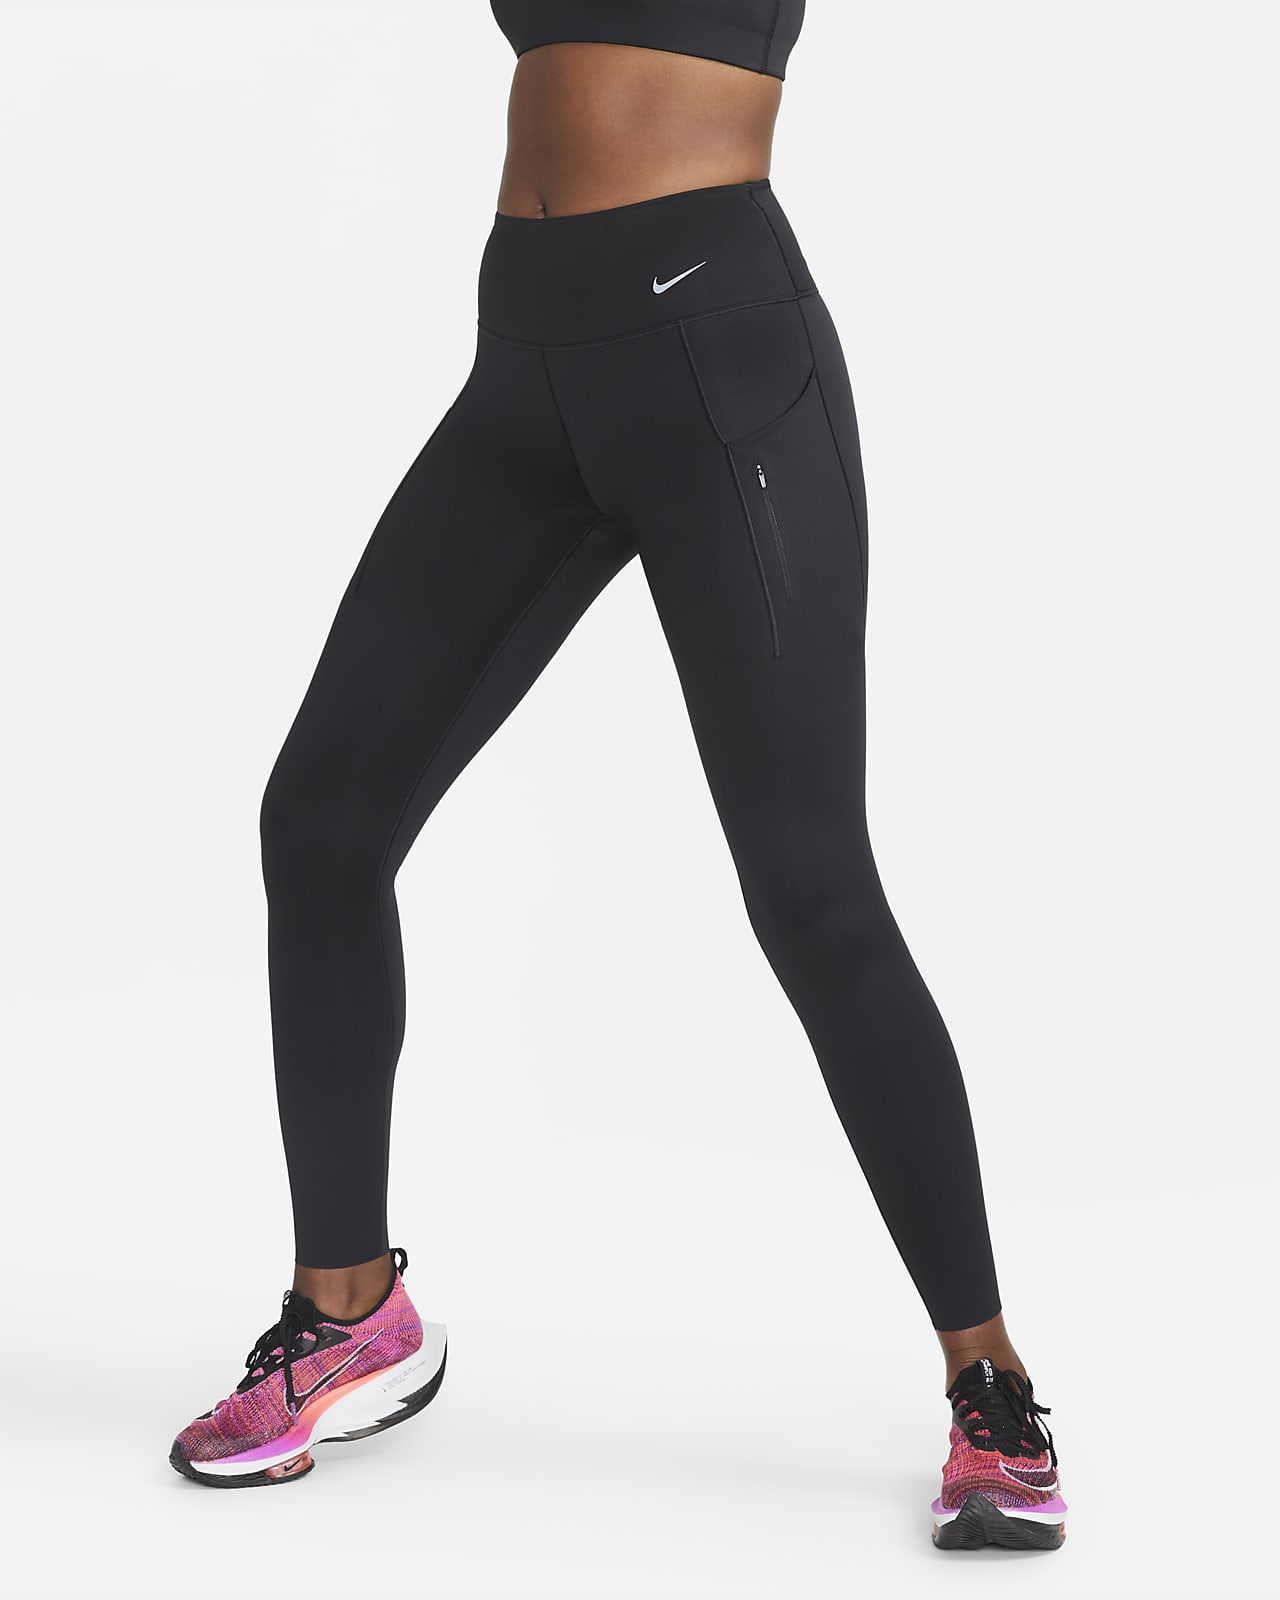 Nike Women's Mid-Rise Full-Length Leggings with Pockets. Nike.com